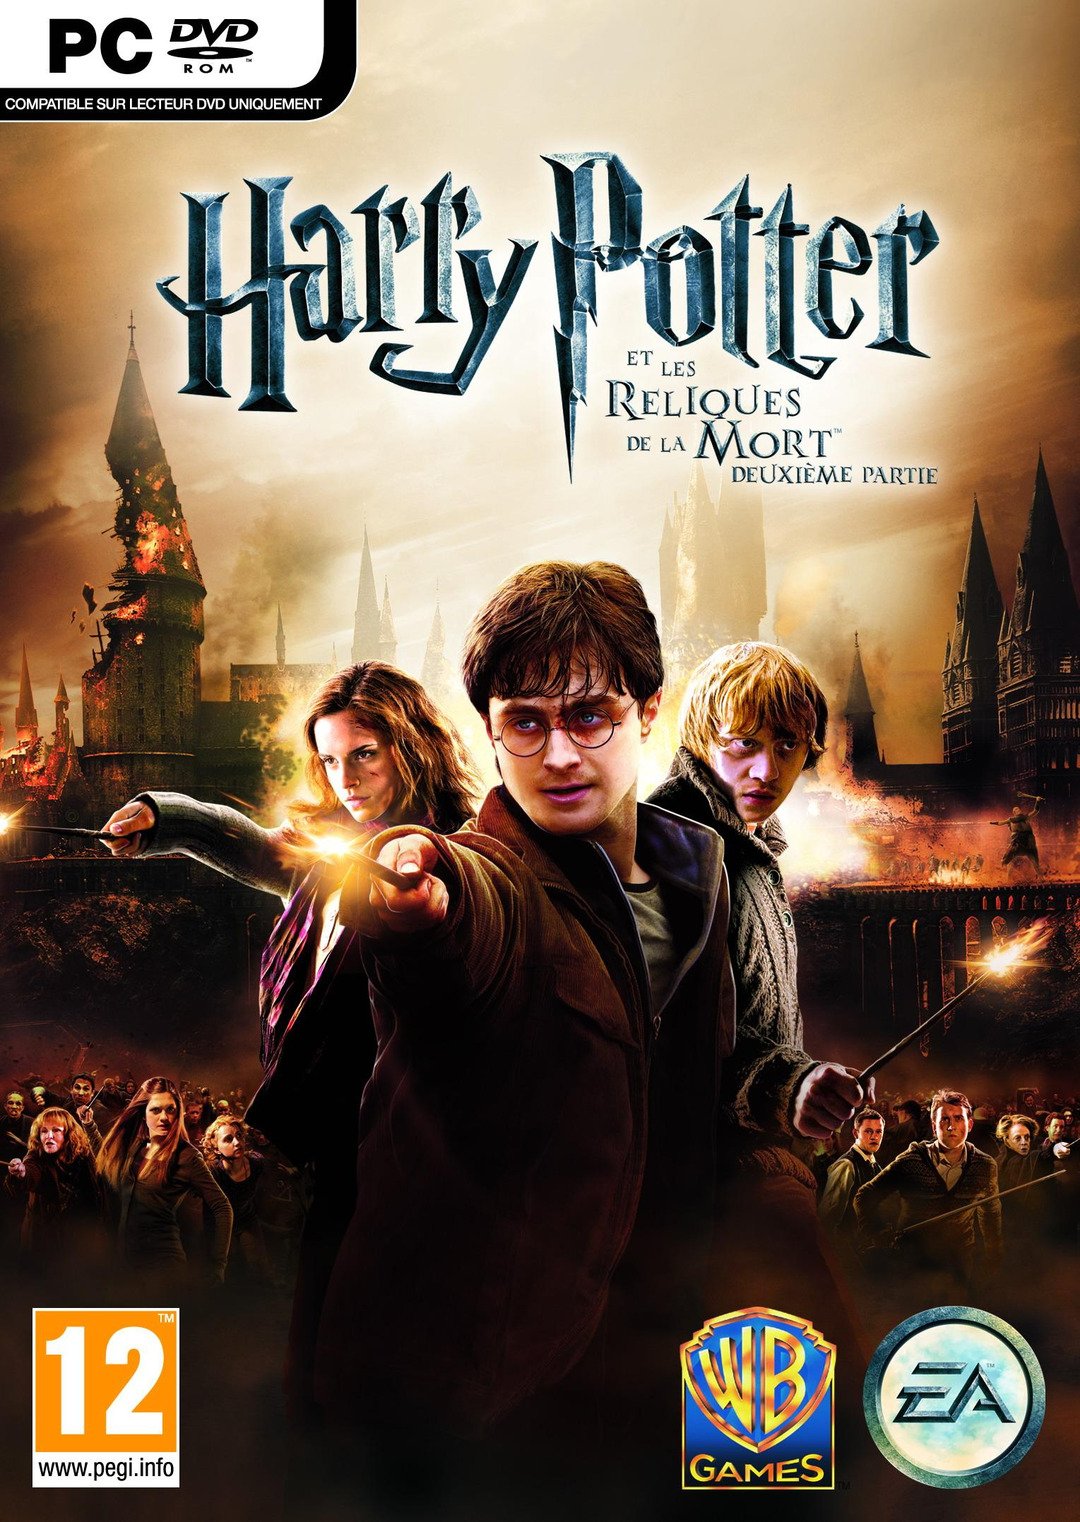 Harry Potter et les Reliques de la Mort - Deuxième Partie + CRACK + MOVIESFIX[PC | ISO] (Exclue) [FS]